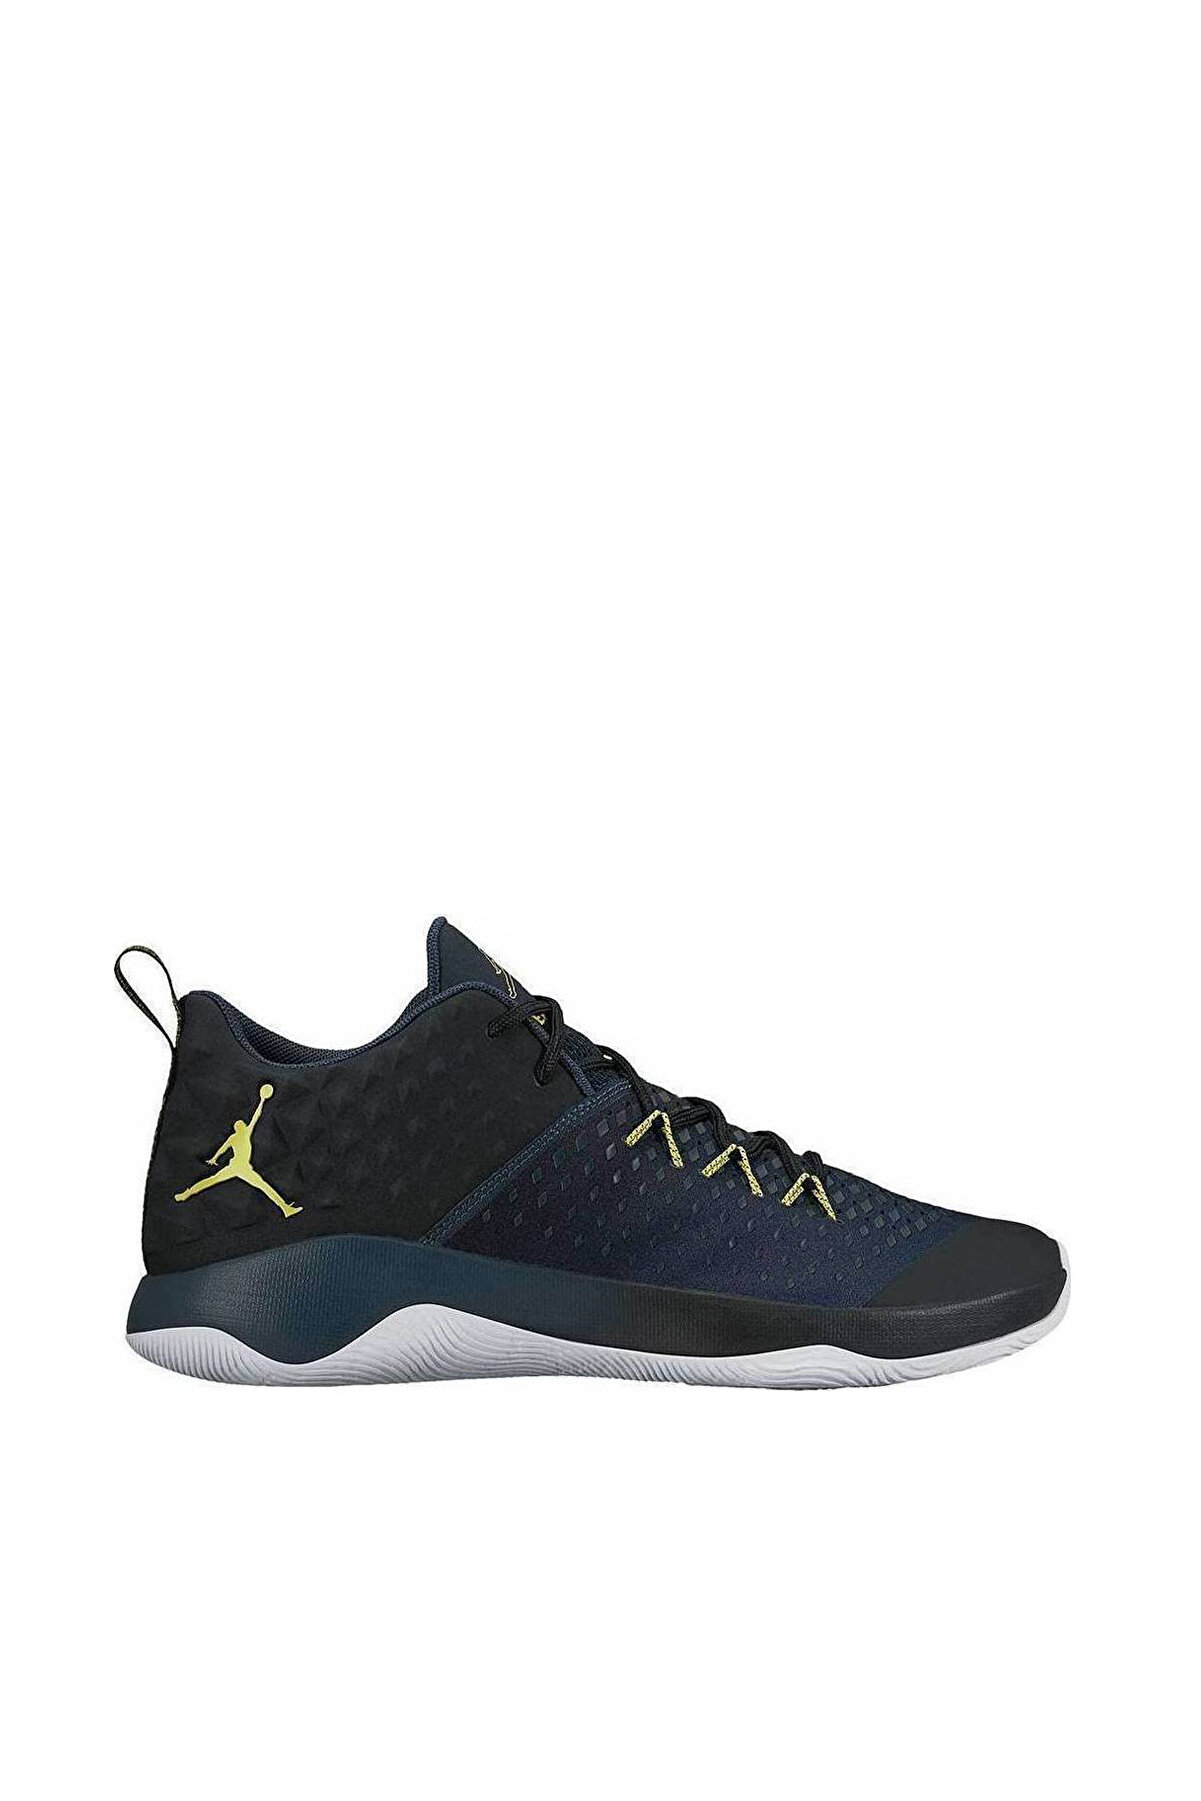 Nike Jordan Extra Fly Basketbol Ayakkabısı - 854551-014